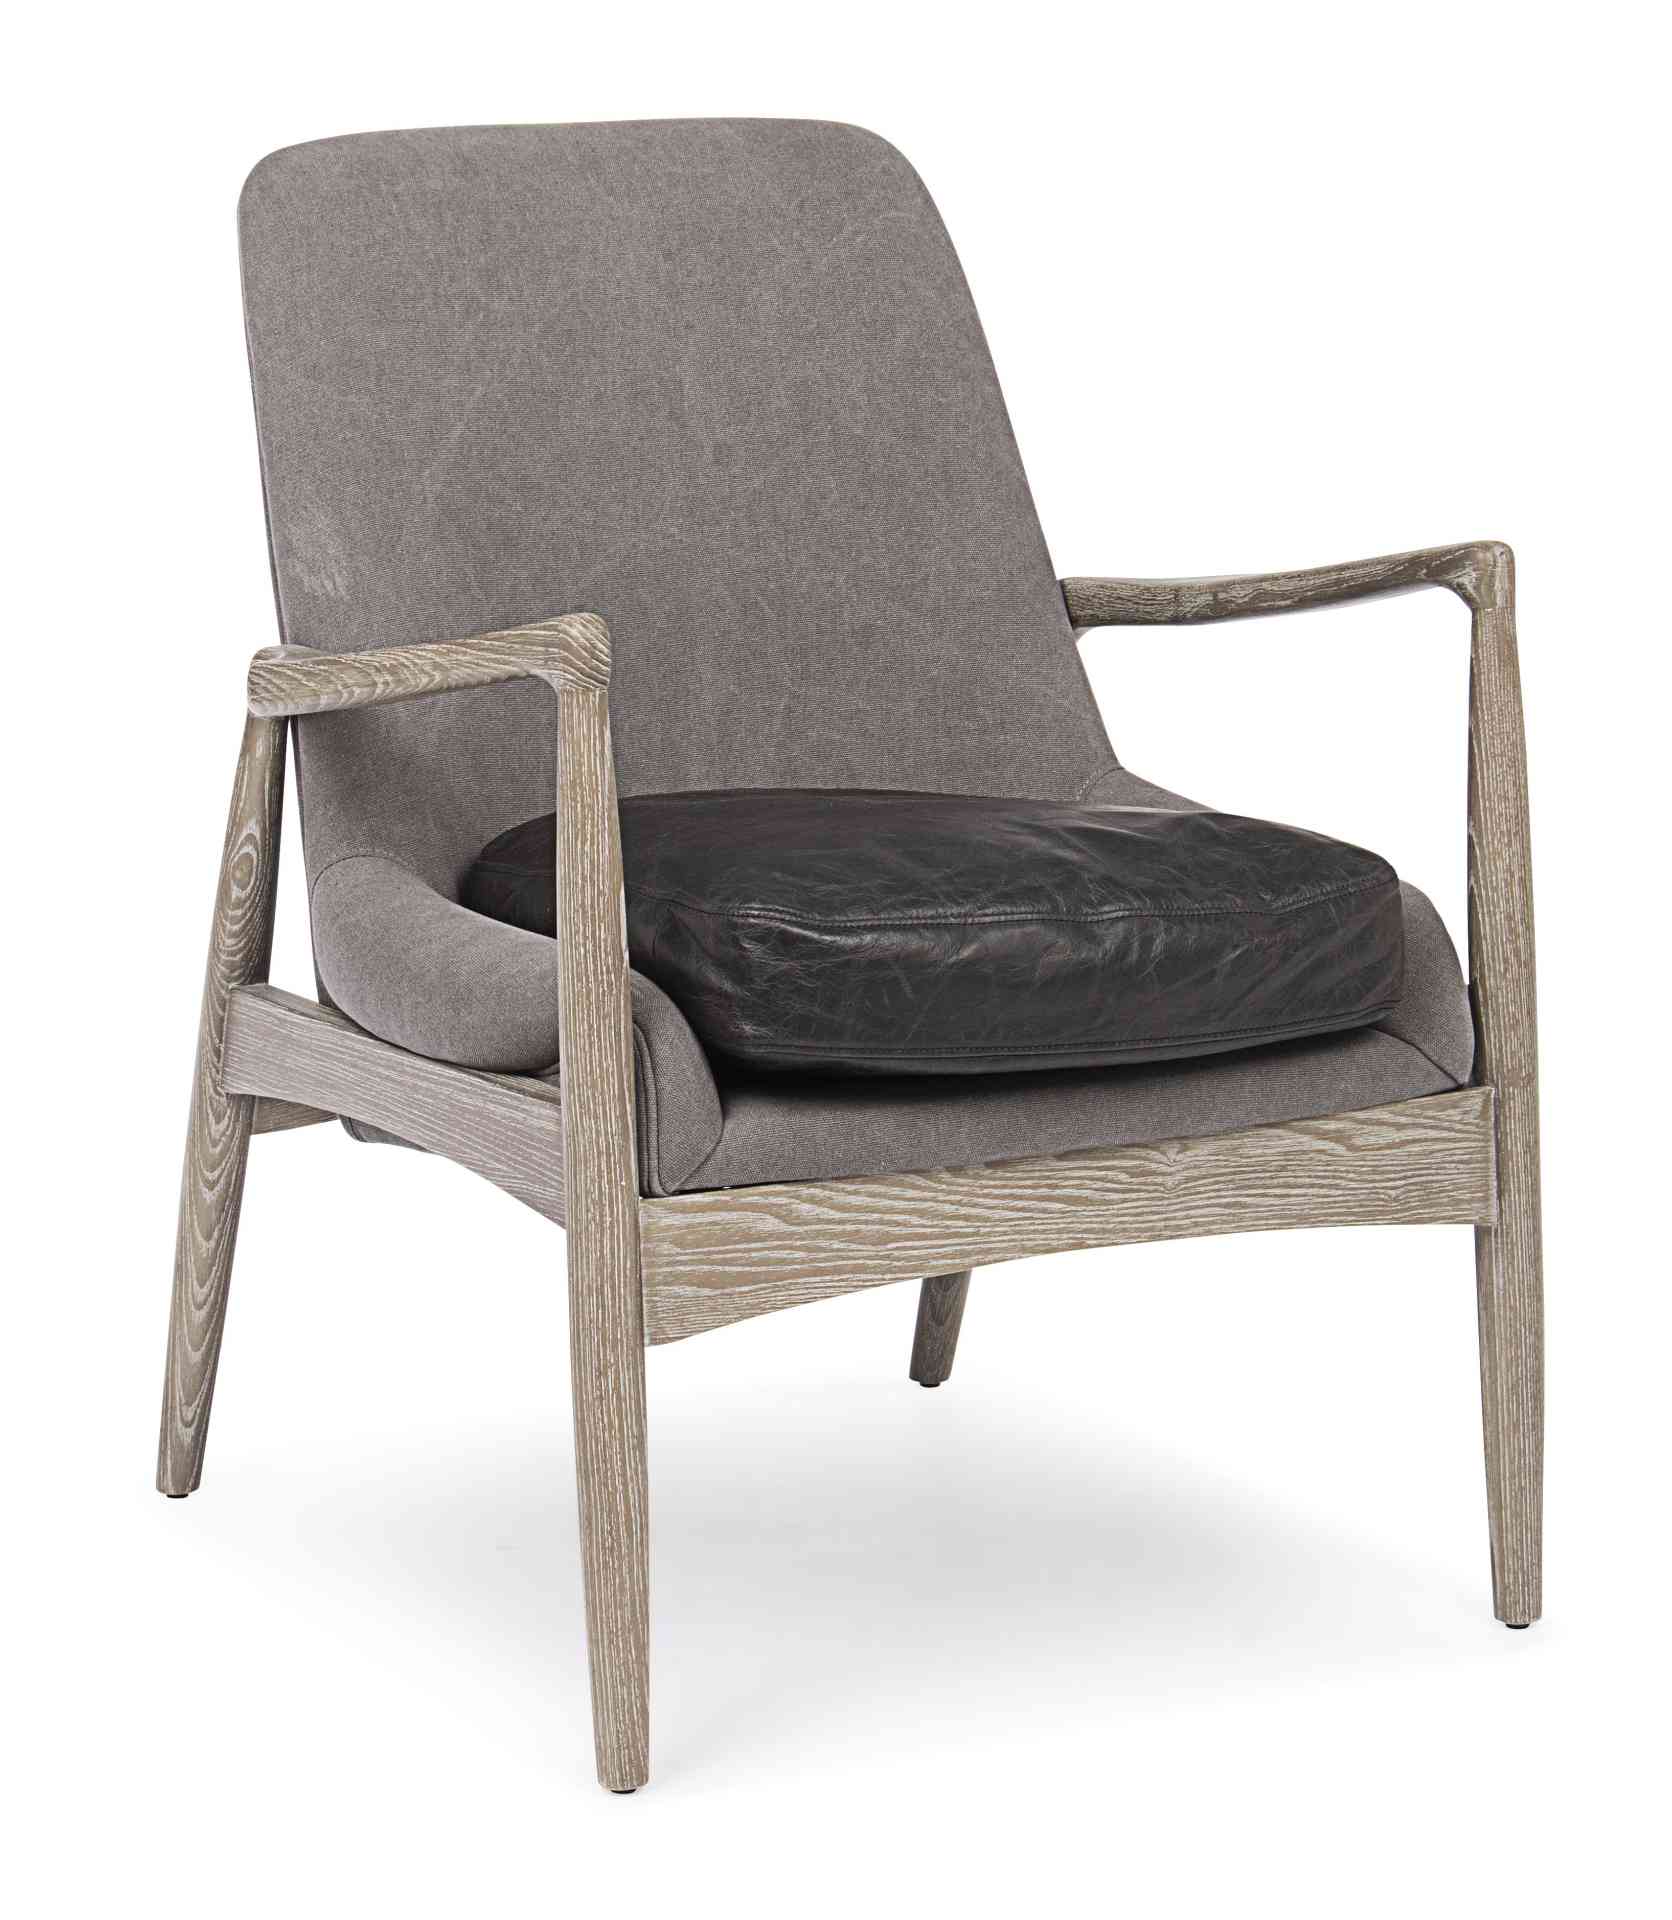 Der Sessel Marittas überzeugt mit seinem klassischen Design. Gefertigt wurde er aus Stoff, welcher einen grauen Farbton besitzt. Das Gestell ist aus Eschenholz und hat eine natürliche Farbe. Der Sessel besitzt eine Sitzhöhe von 46 cm. Die Breite beträgt 6